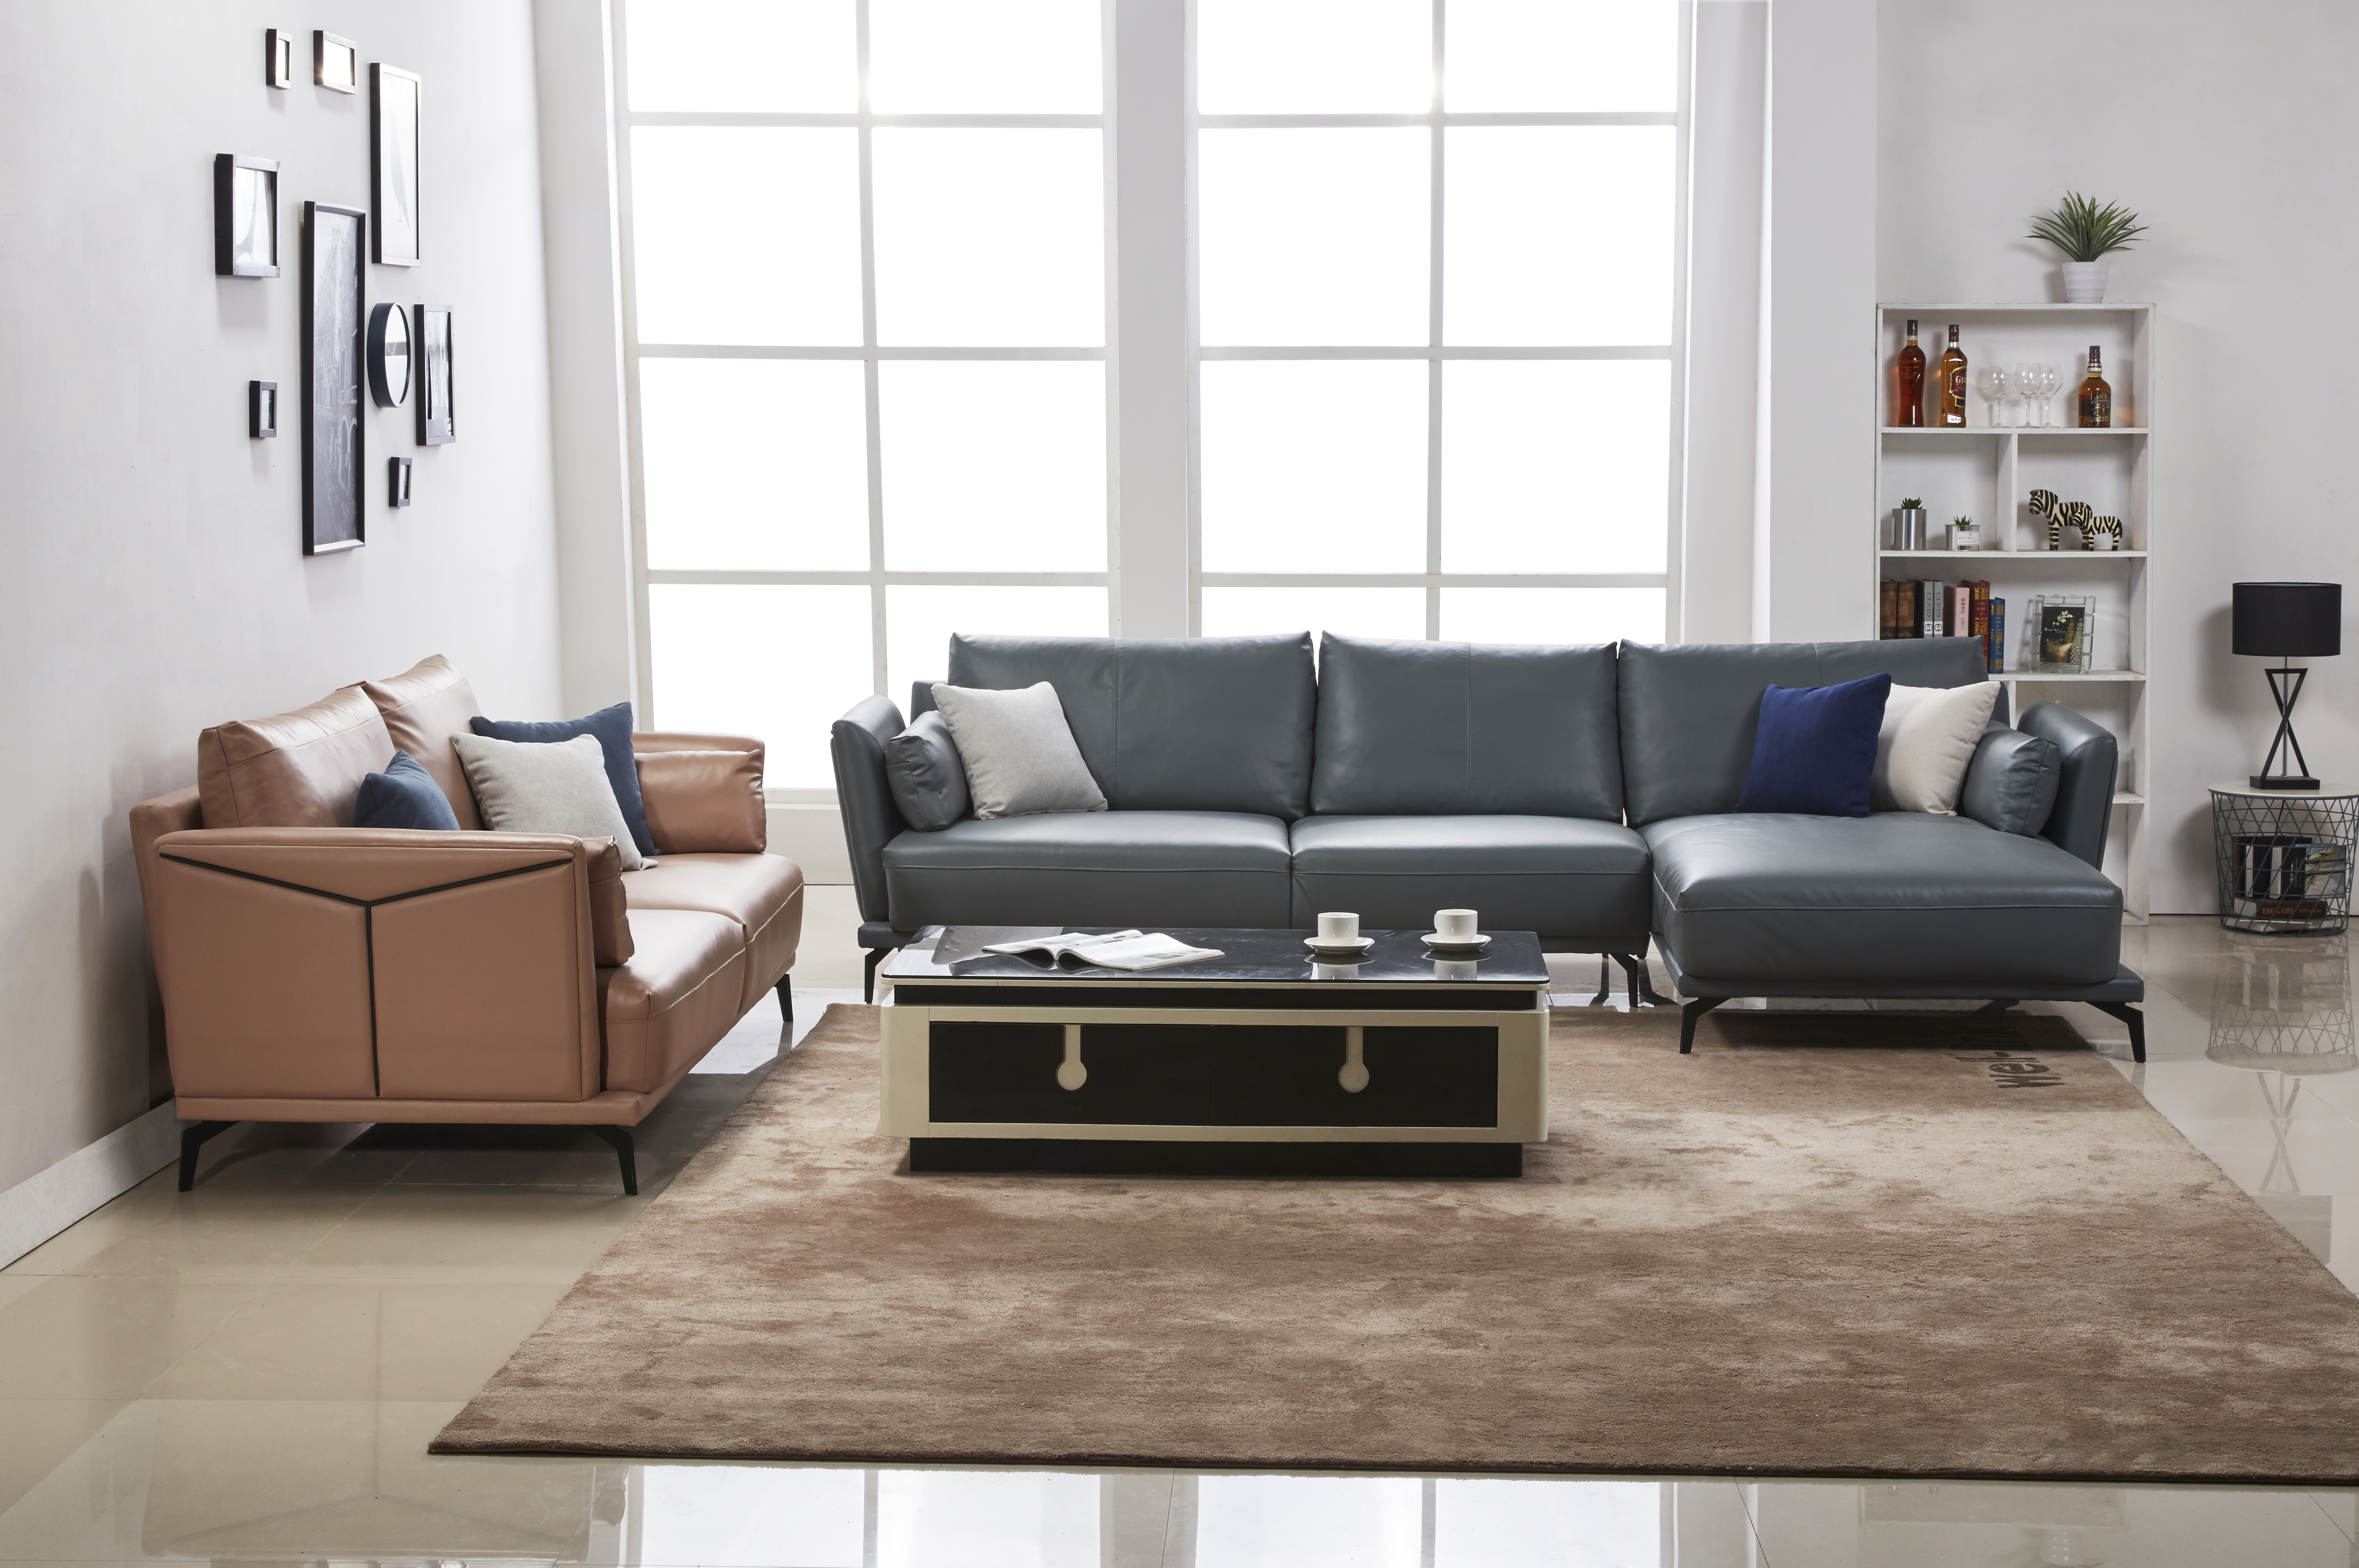 Design Sofa Couch Corner Stool Upholstery Living Room L Shape Modern Elegant New